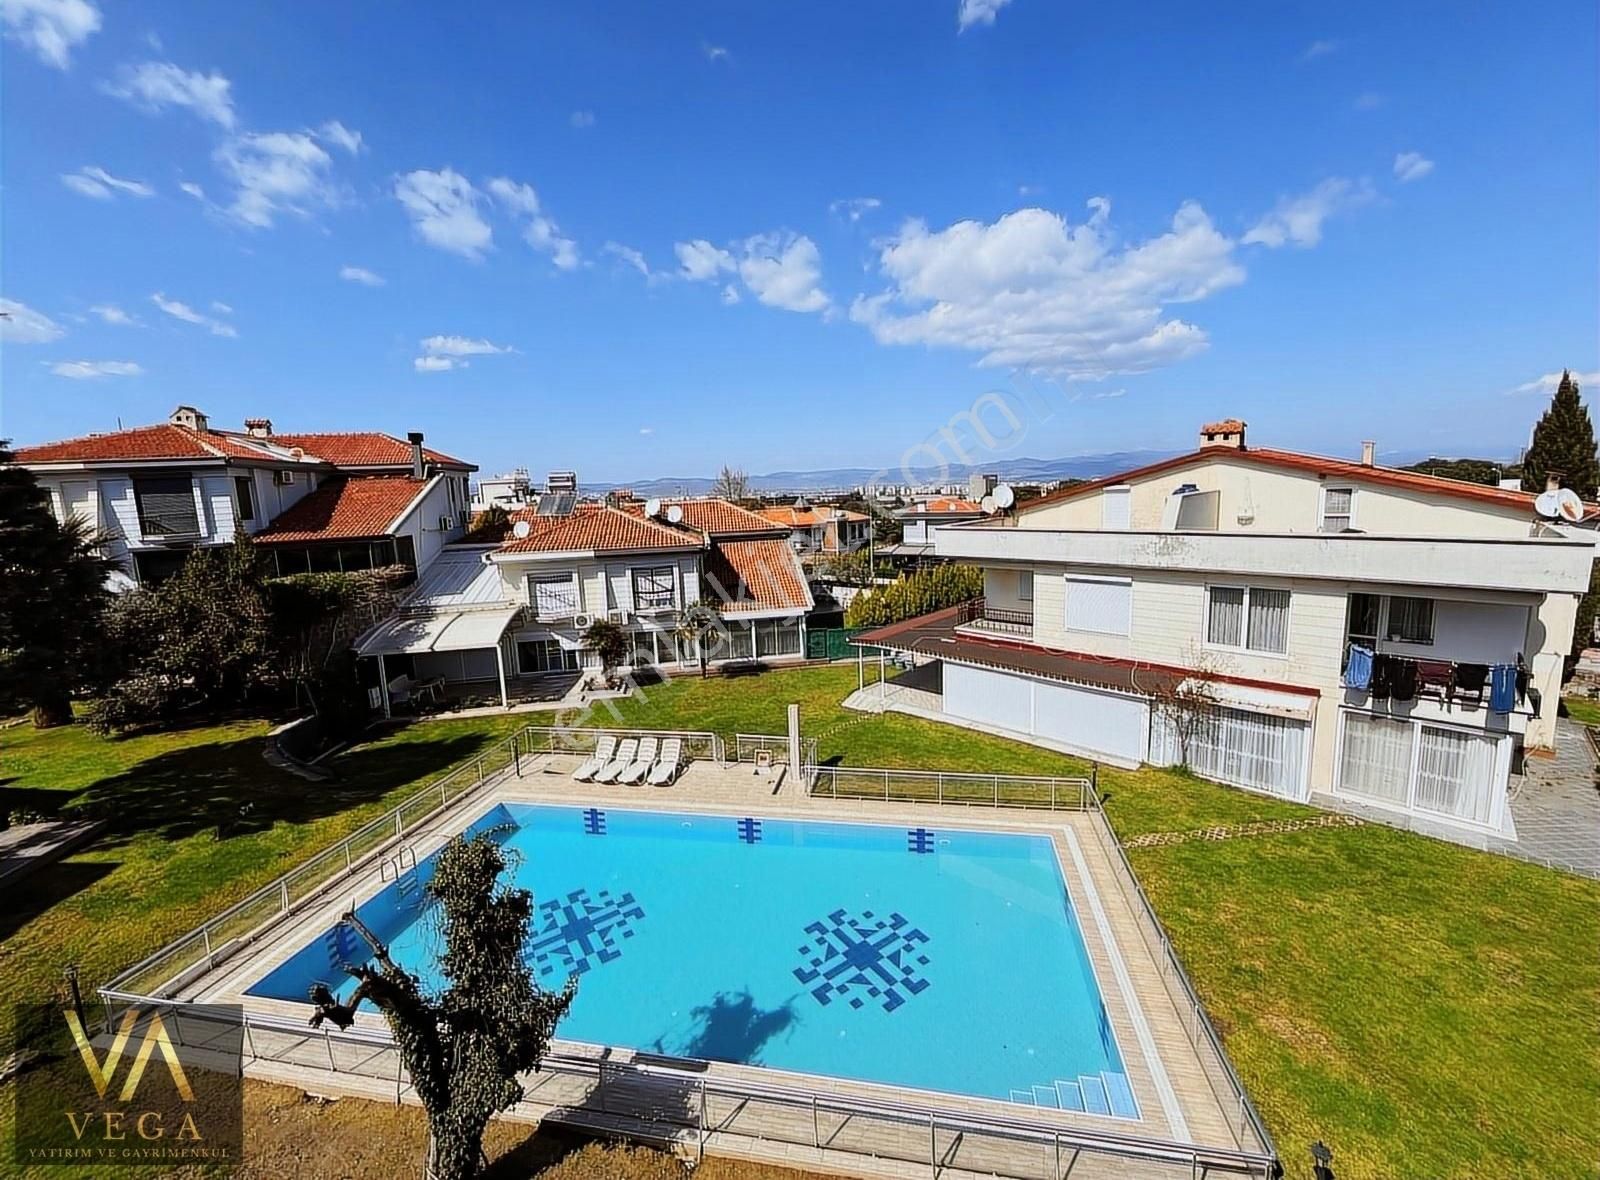 Yunusemre Uncubozköy Kiralık Villa VEGA'DAN KEÇİLİKÖY VİLLALAR BÖLGESİNDE 4+1 TRİPLEKS VİLLA